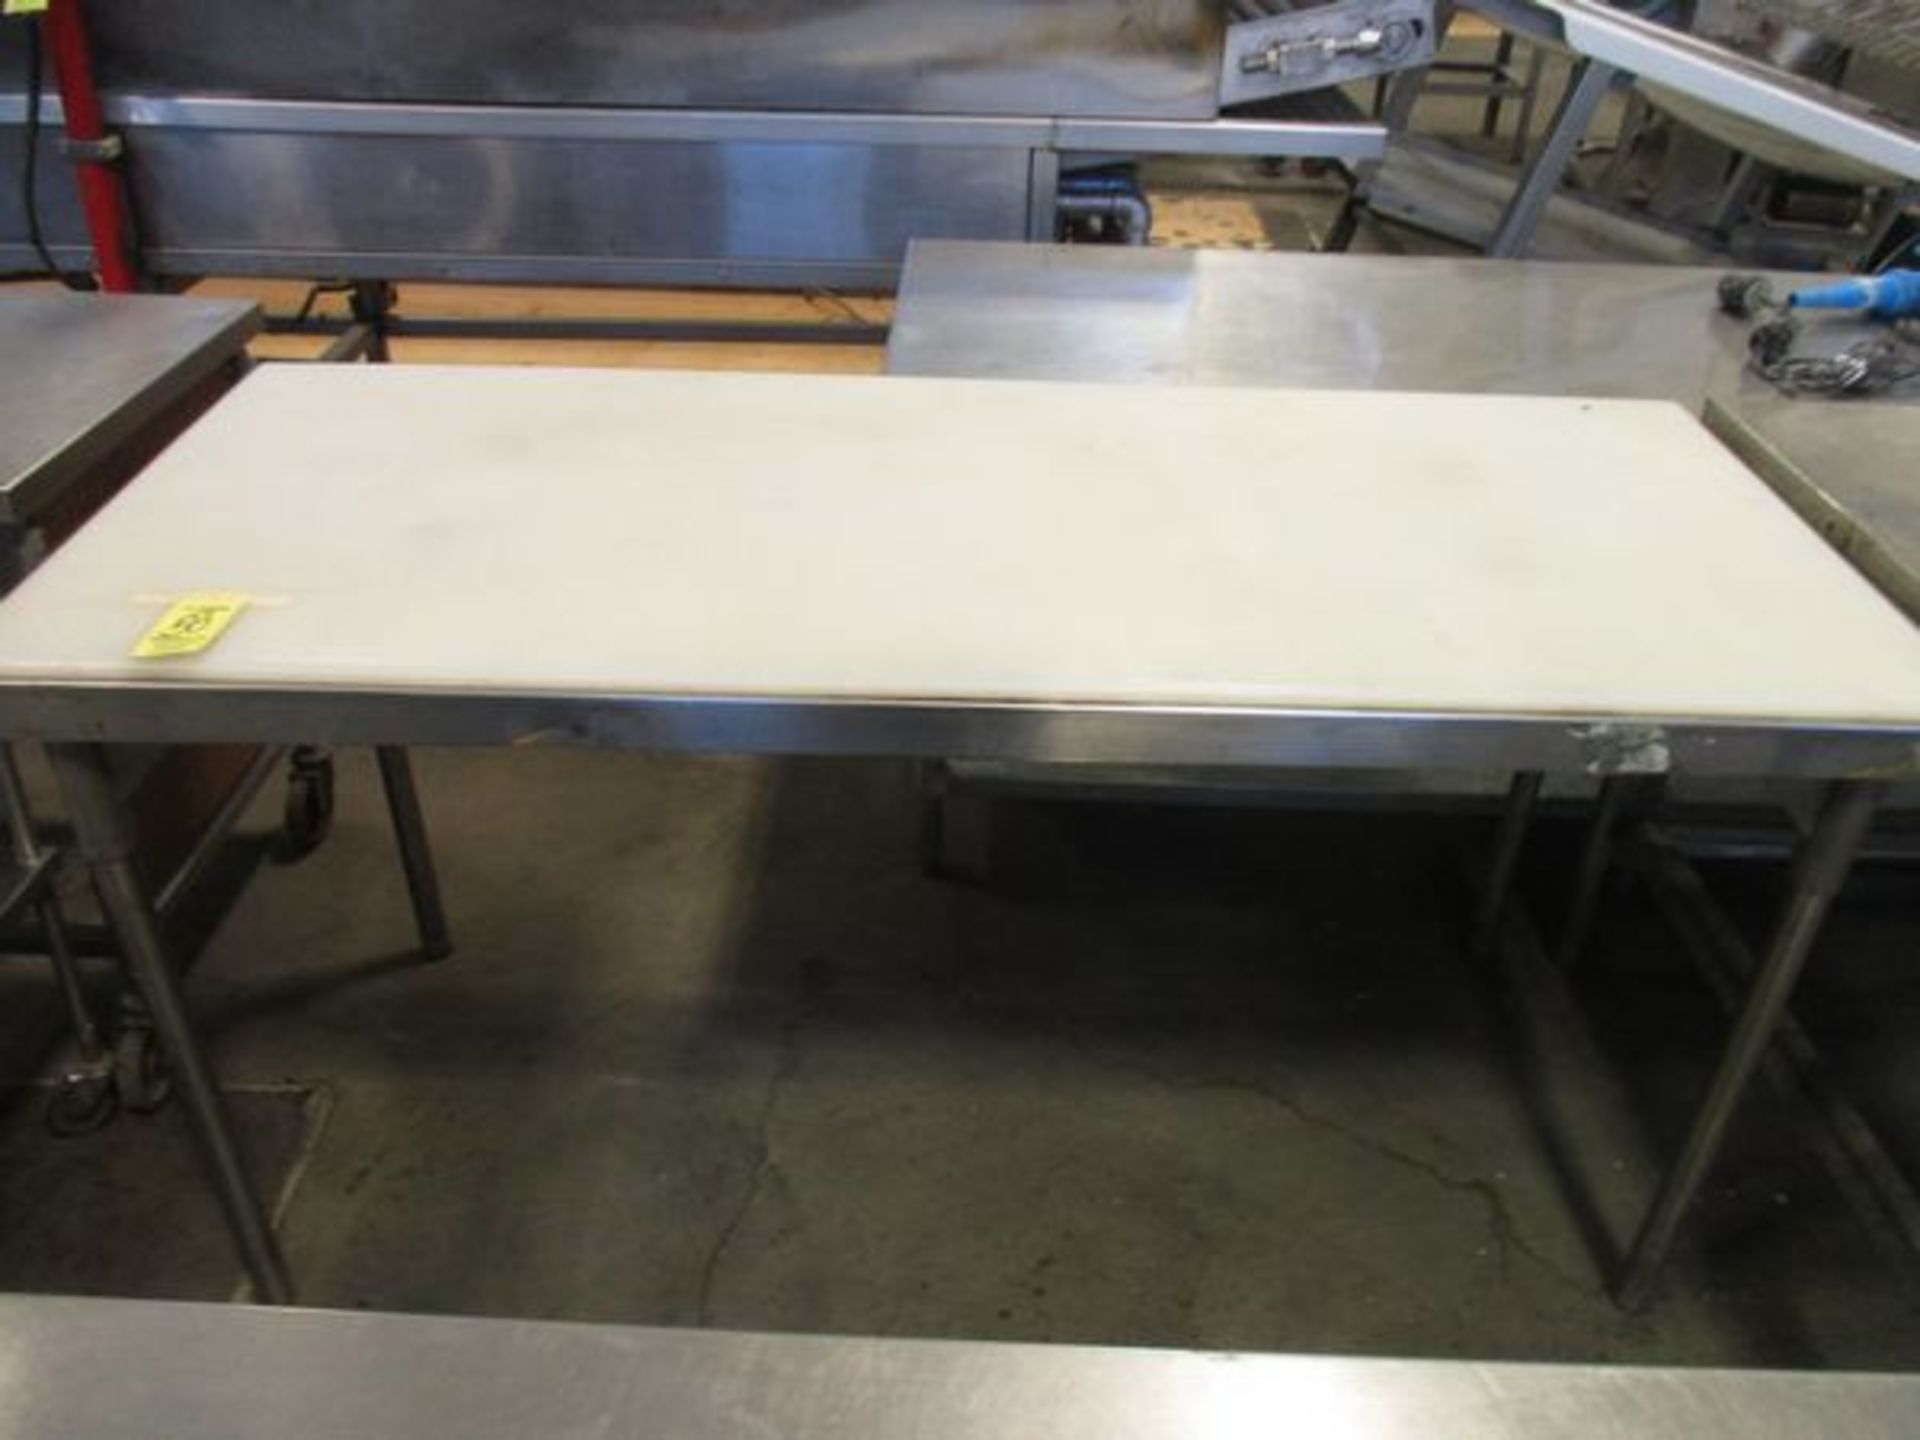 30" x 72" S.S. Table w/Neoprene Cutting Board Top